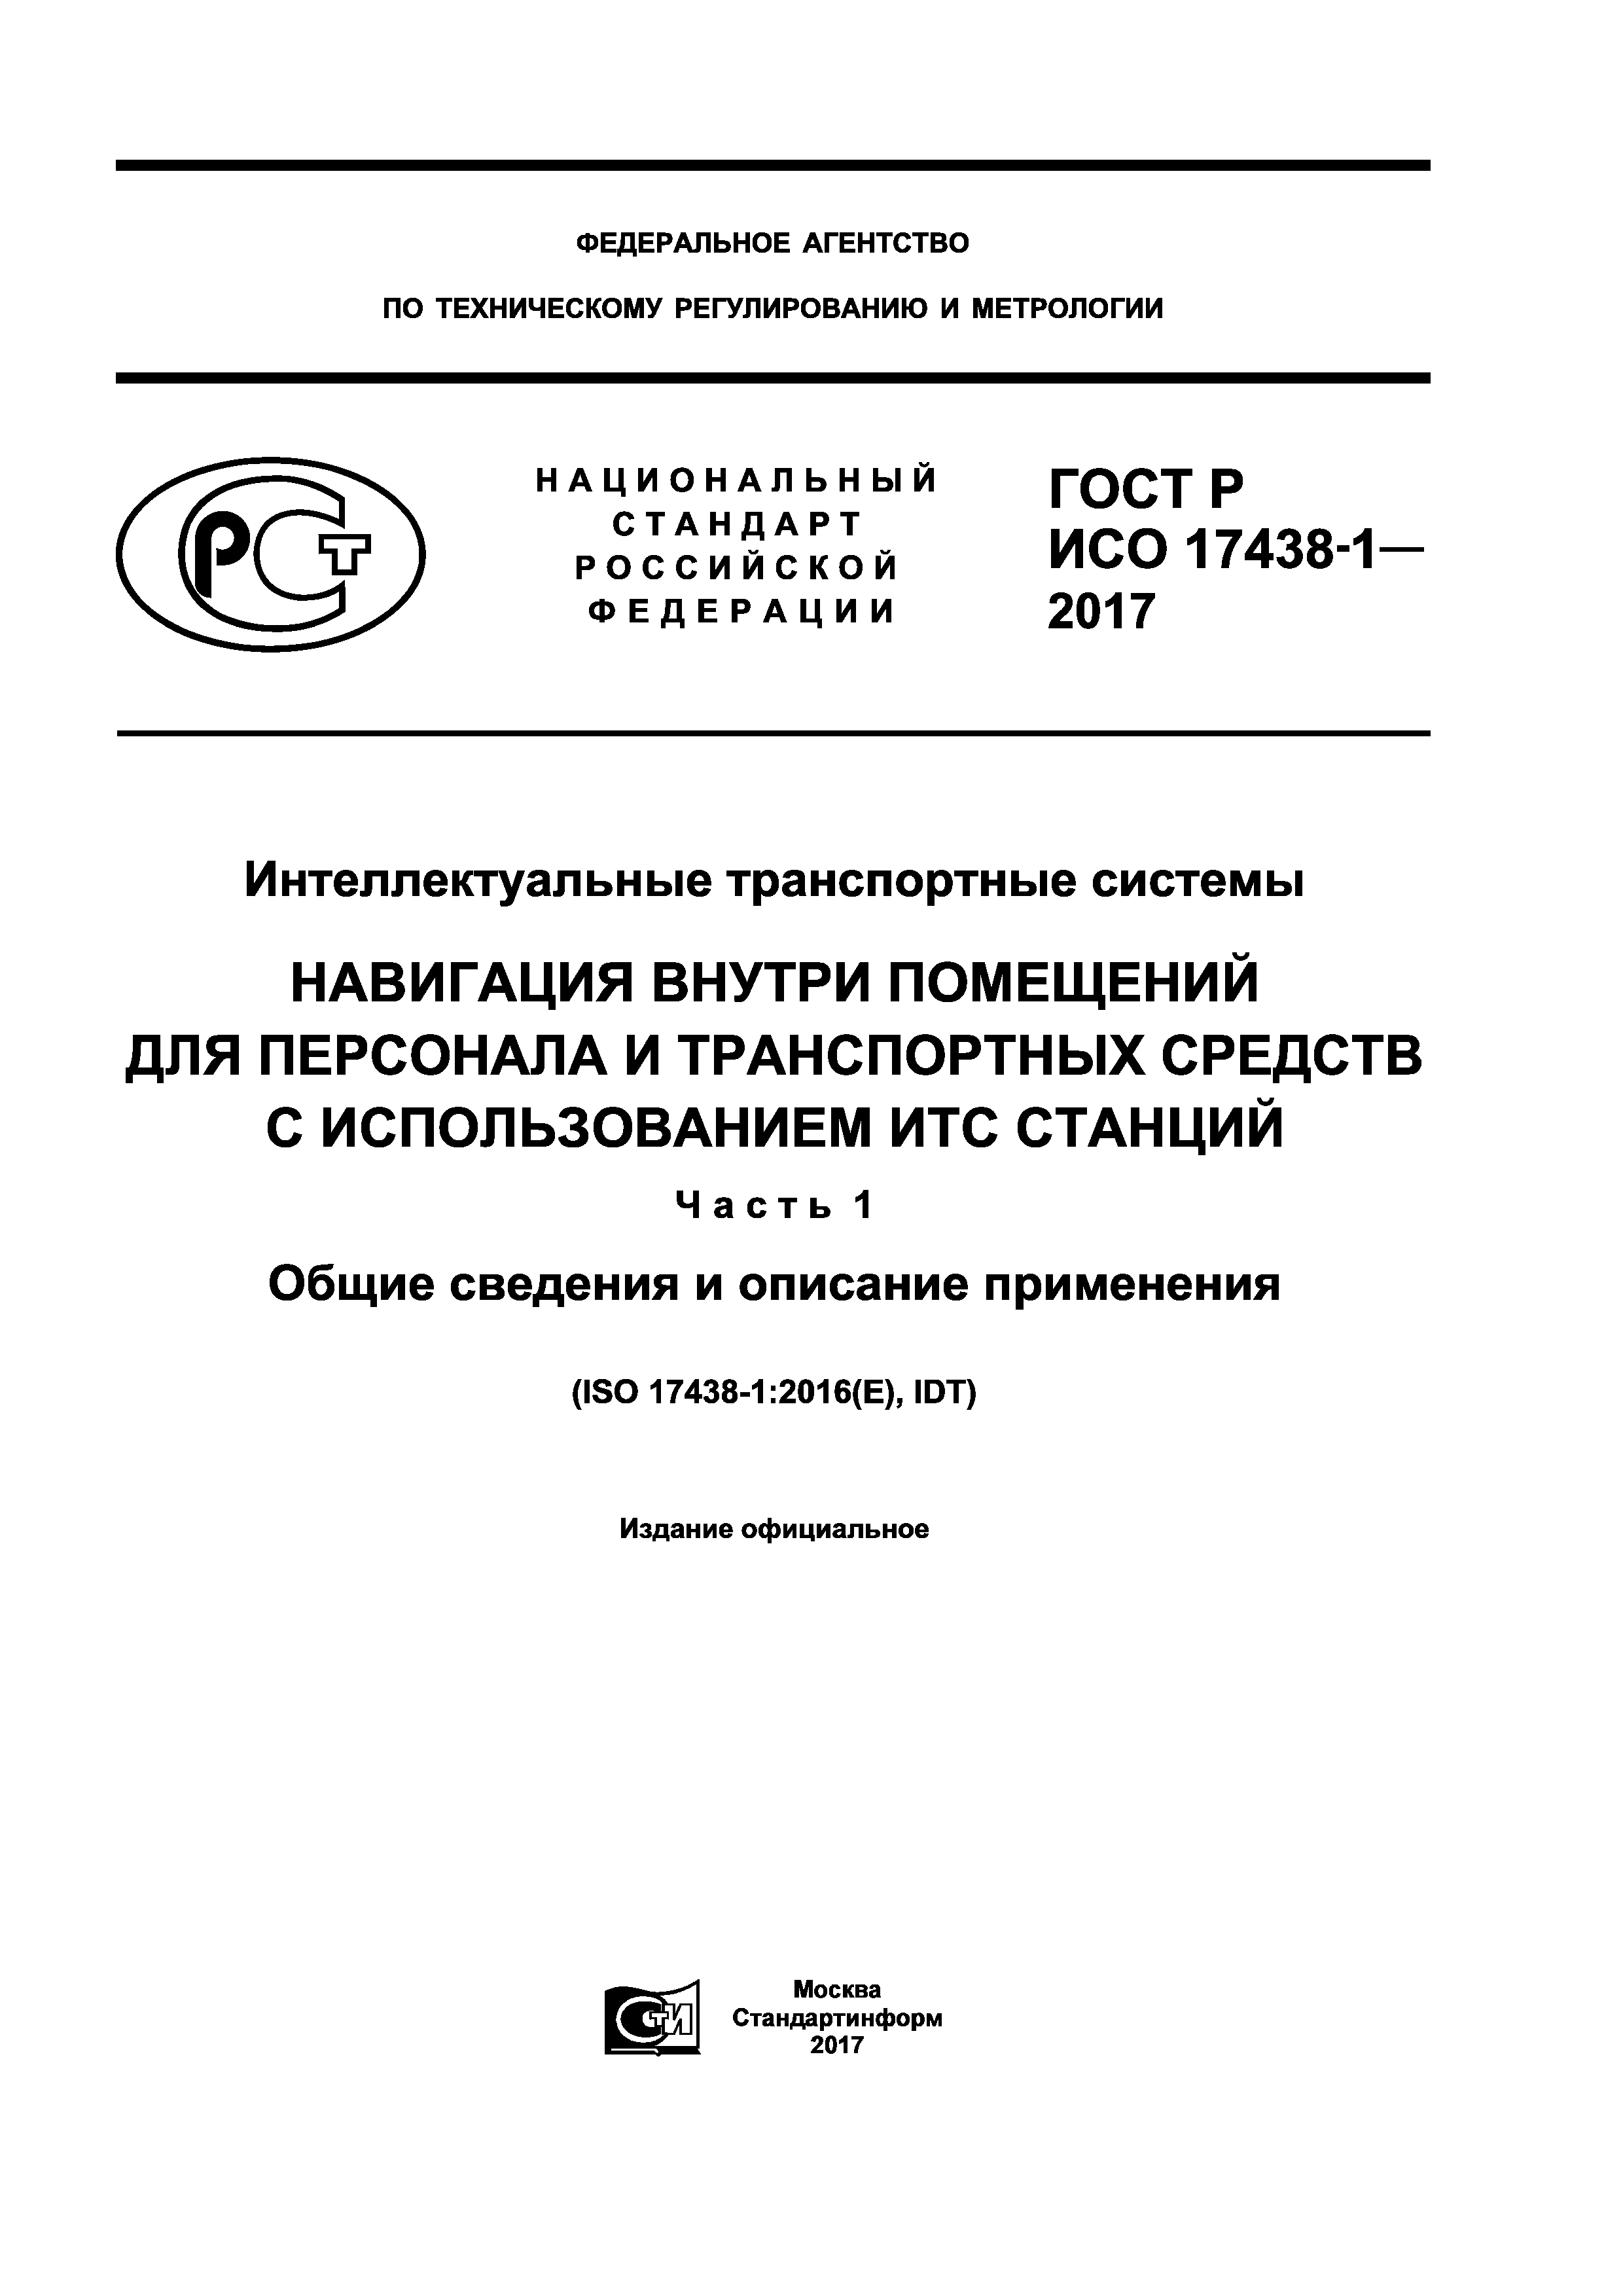 ГОСТ Р ИСО 17438-1-2017